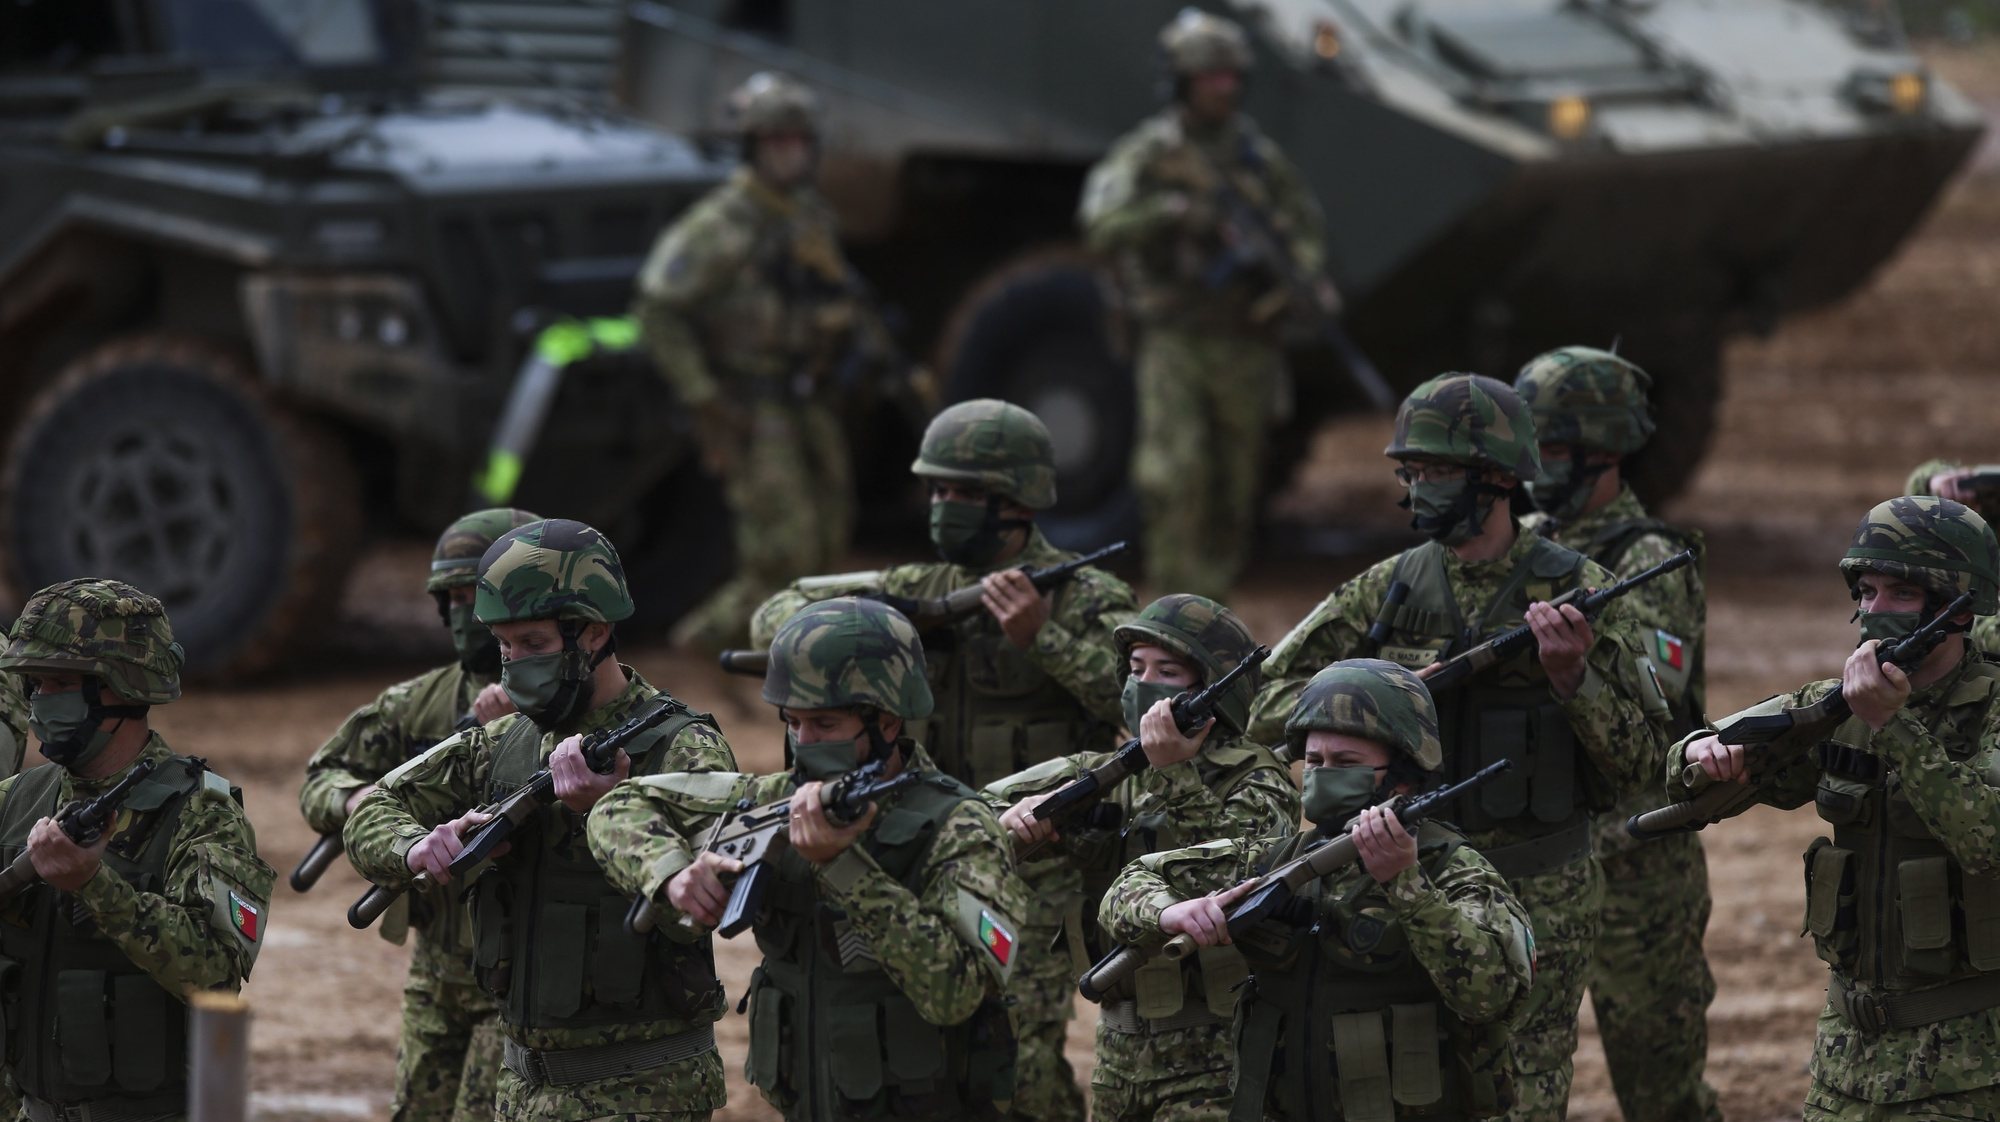 Militares participam na demonstração tática da Companhia do Exército que será projetada para a Roménia, no âmbito da NATO, no Campo Militar de Santa Margarida, em Constância, 22 de março de 2022. PAULO CUNHA/LUSA